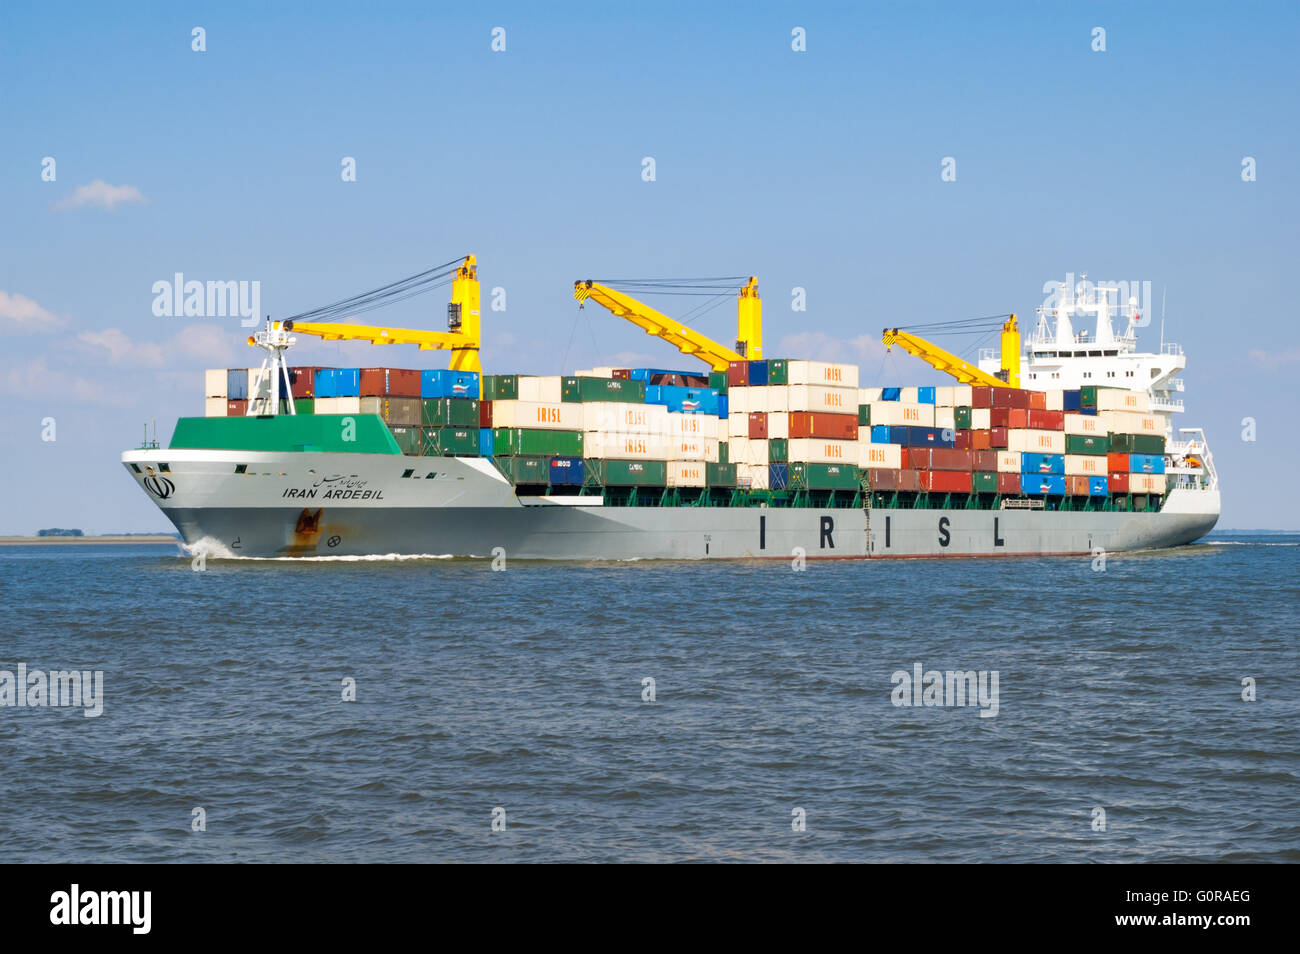 Containerschiff Iran Ardebil auf New Waterway verlassen Hafen von Rotterdam in den Niederlanden Stockfoto